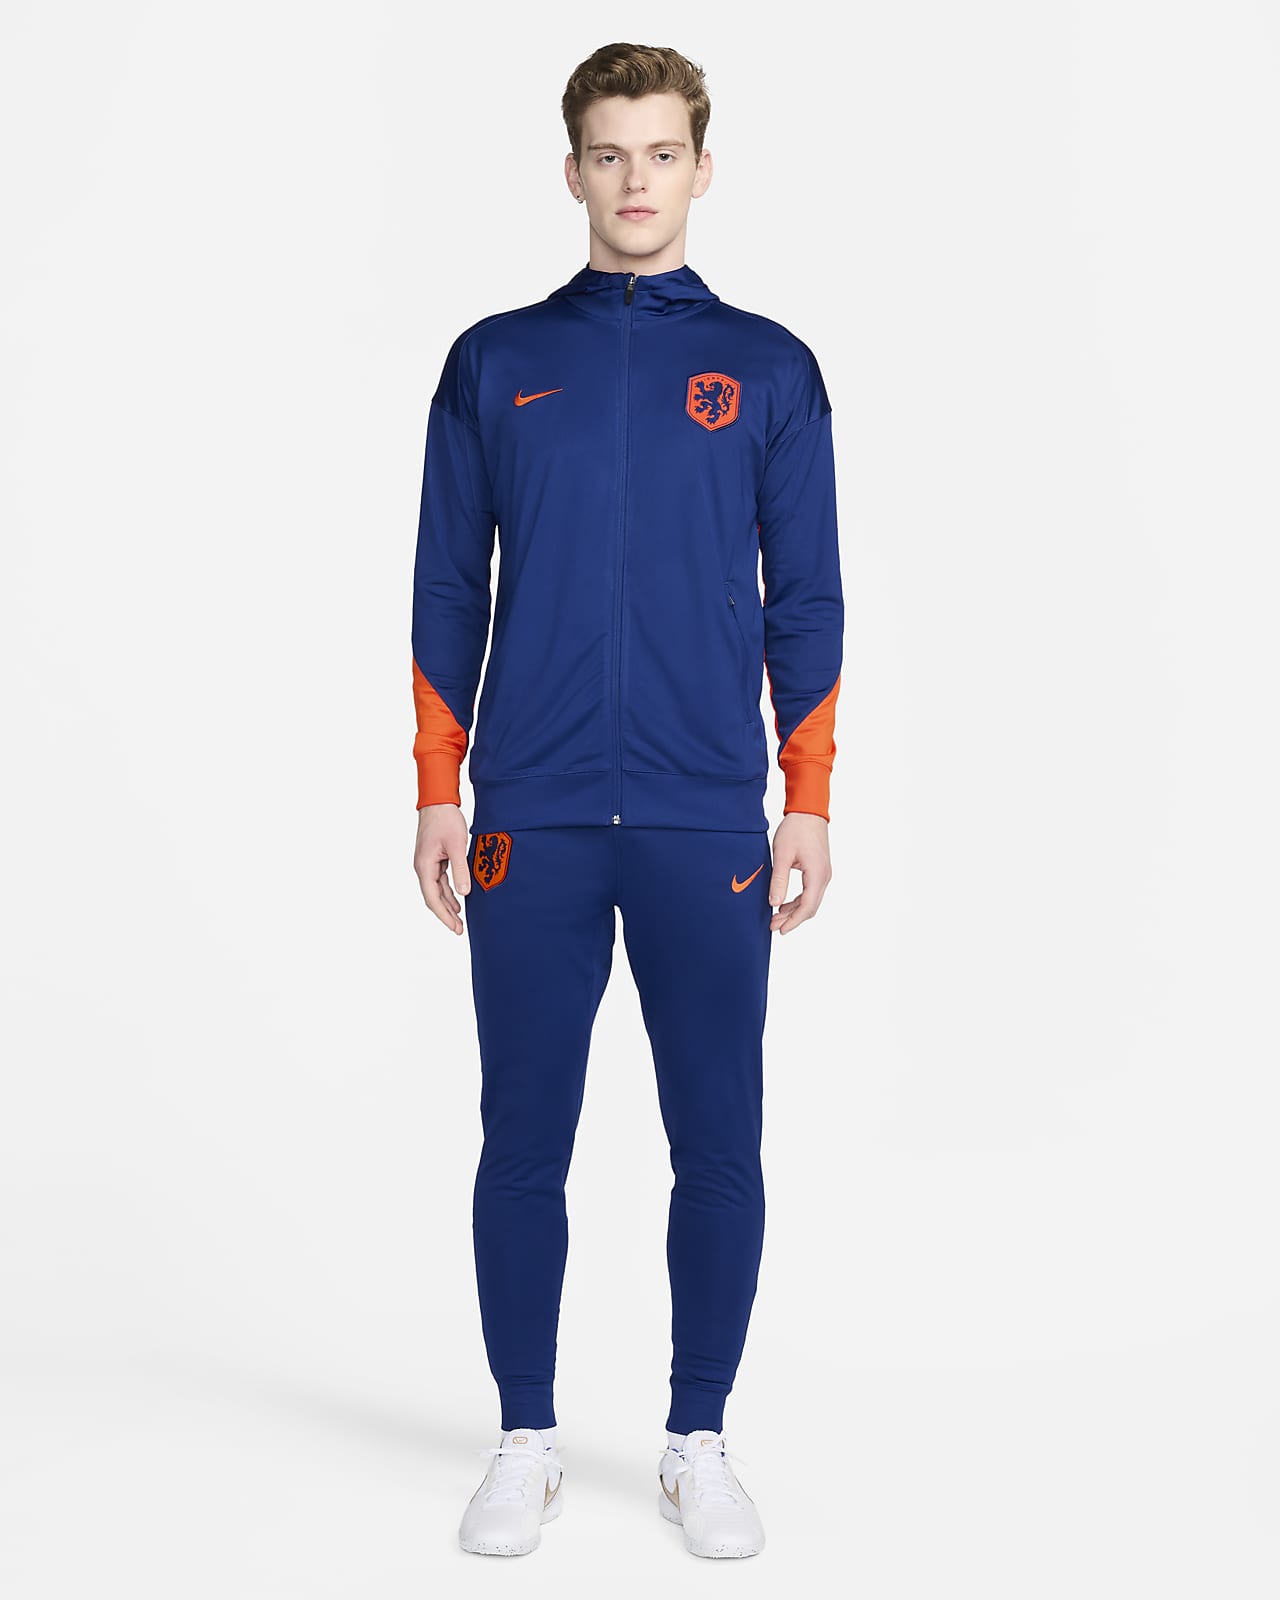 Ανδρική ποδοσφαιρική πλεκτή φόρμα με κουκούλα Nike Dri-FIT Κάτω Χώρες Strike